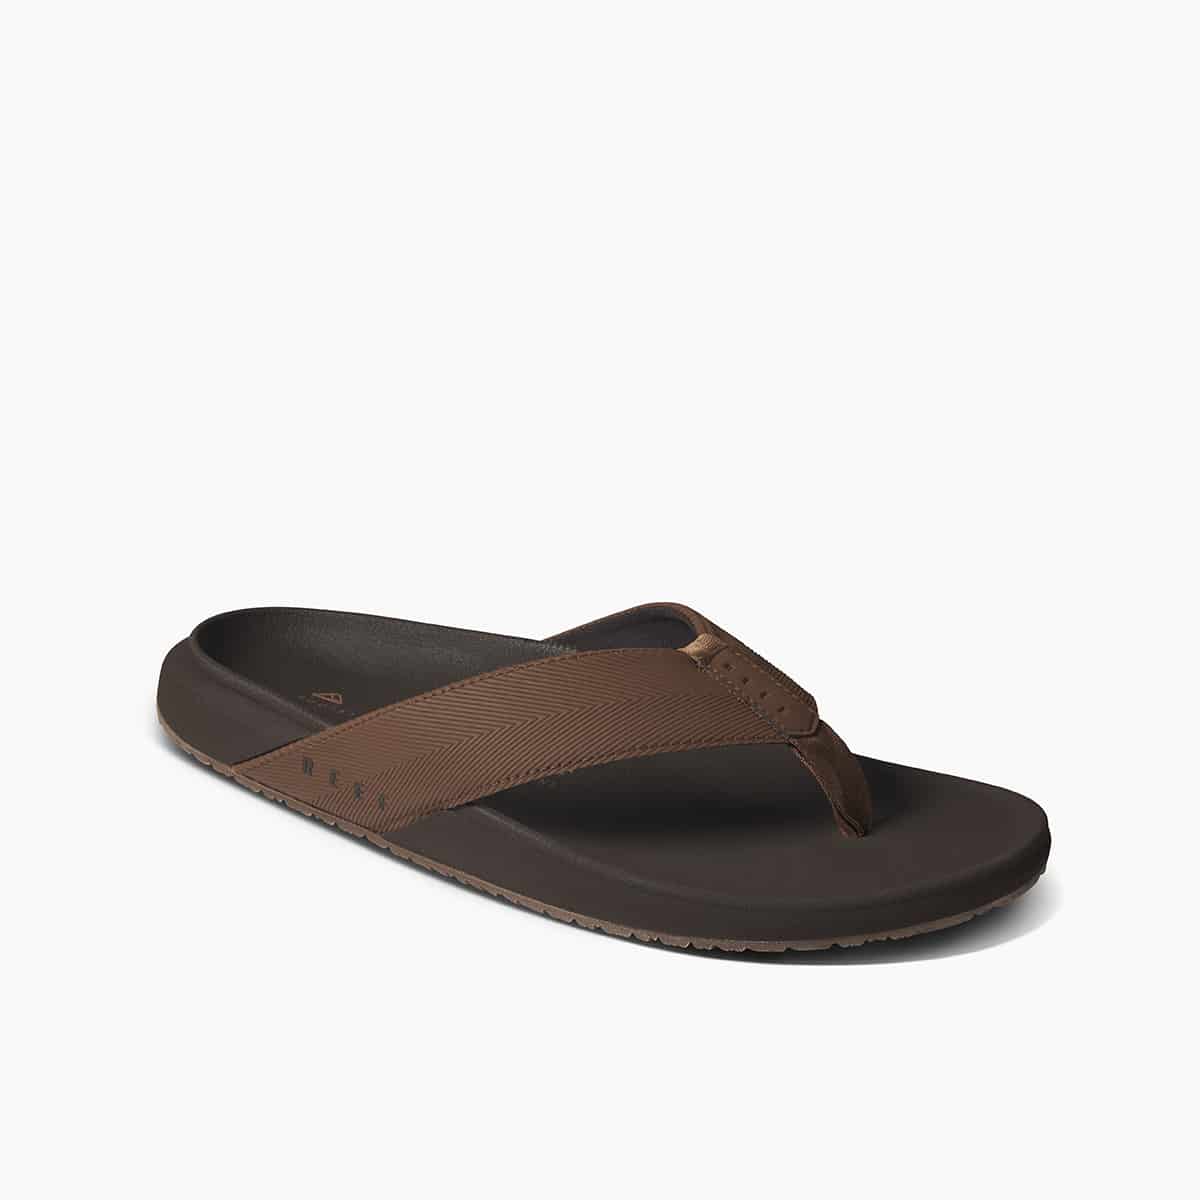 Reef sandals, flip flops for men